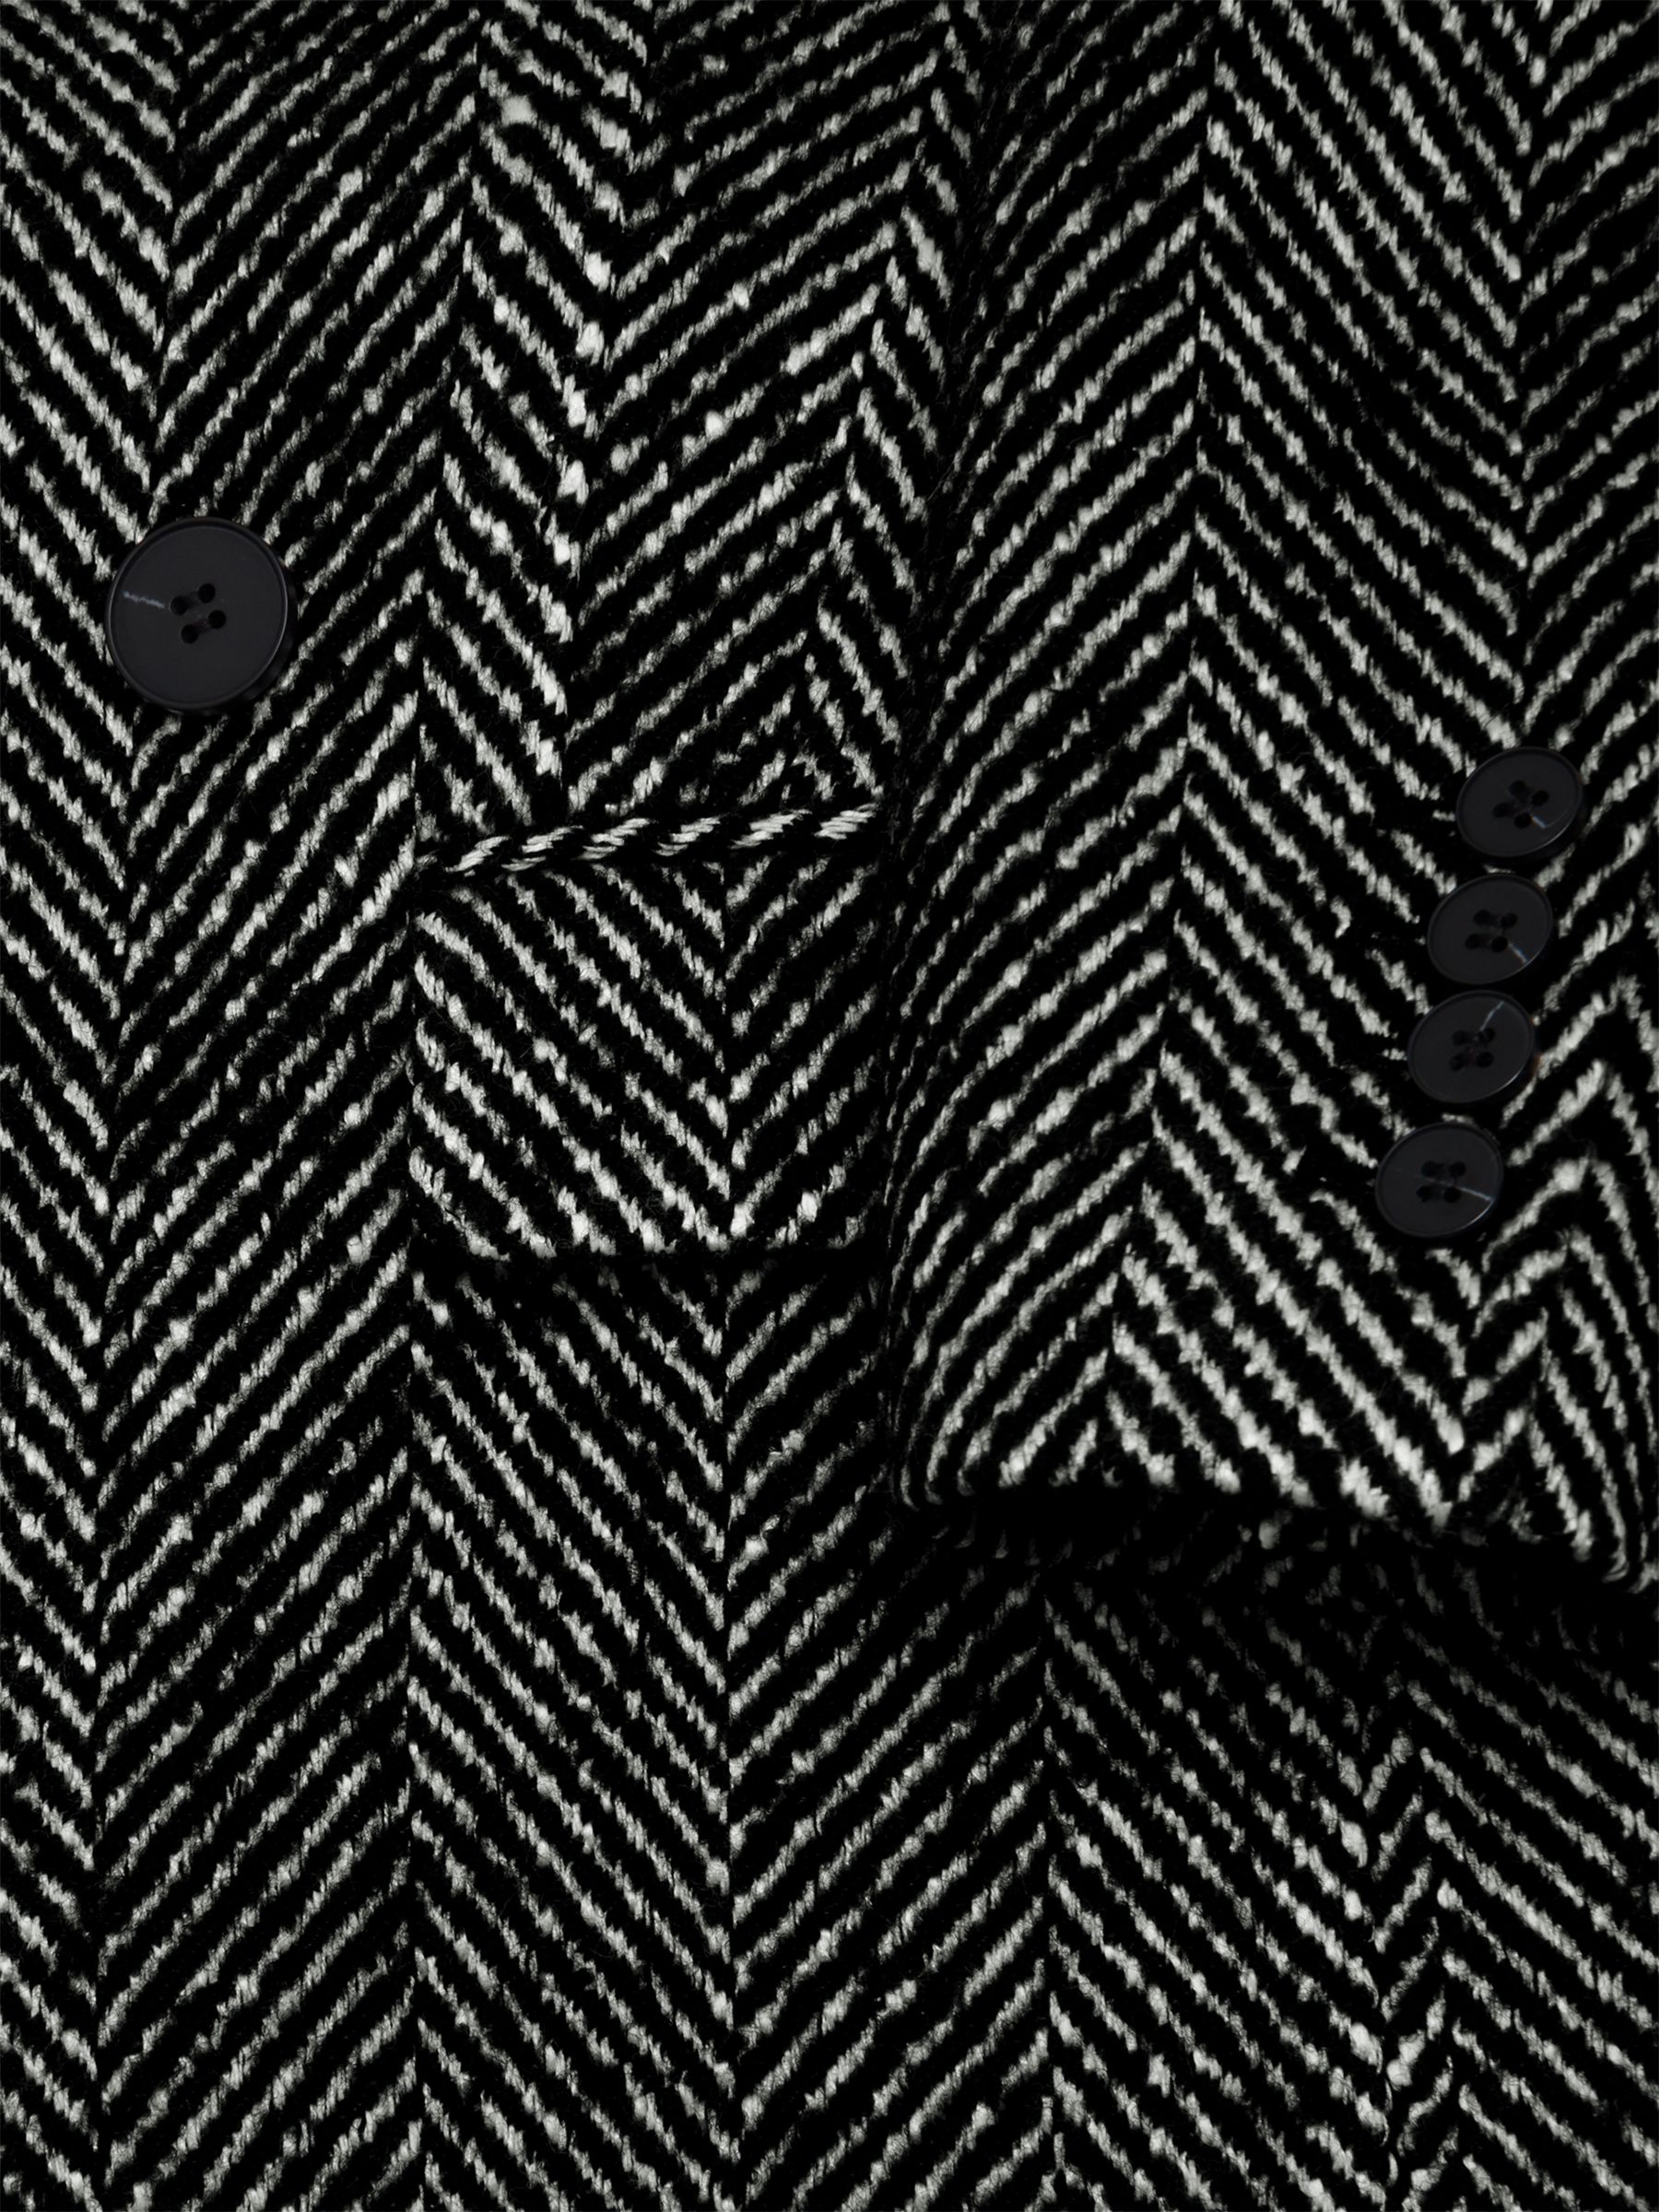 Buy Hobbs Skye Double Breasted Wool Blend Coat, Black/White Online at johnlewis.com